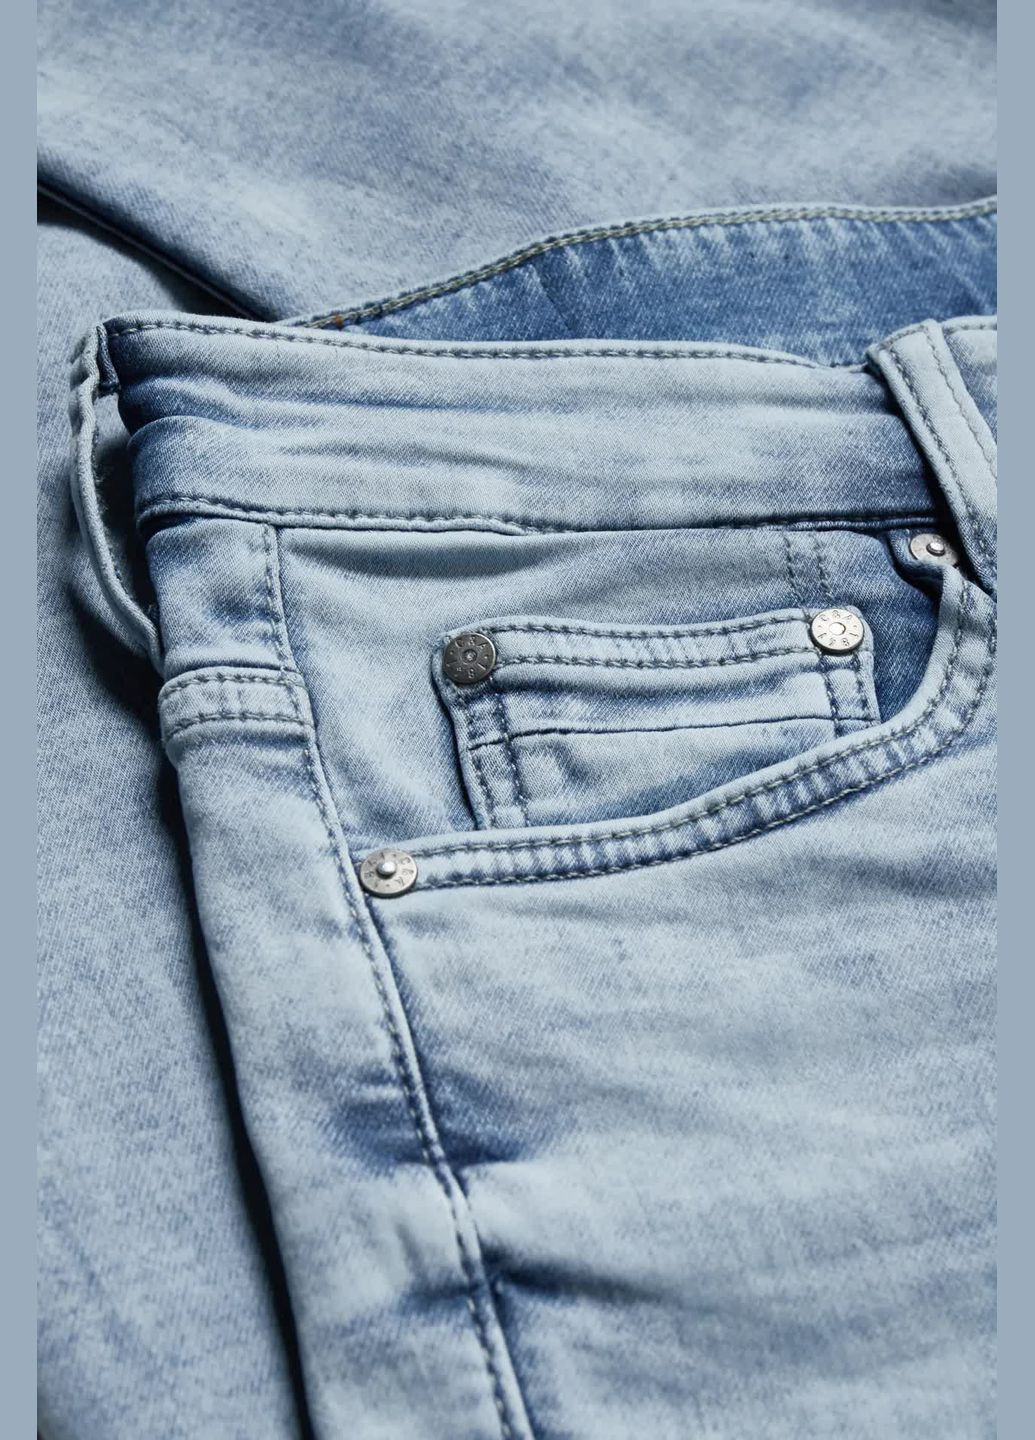 Голубые демисезонные джинсы slim fit C&A